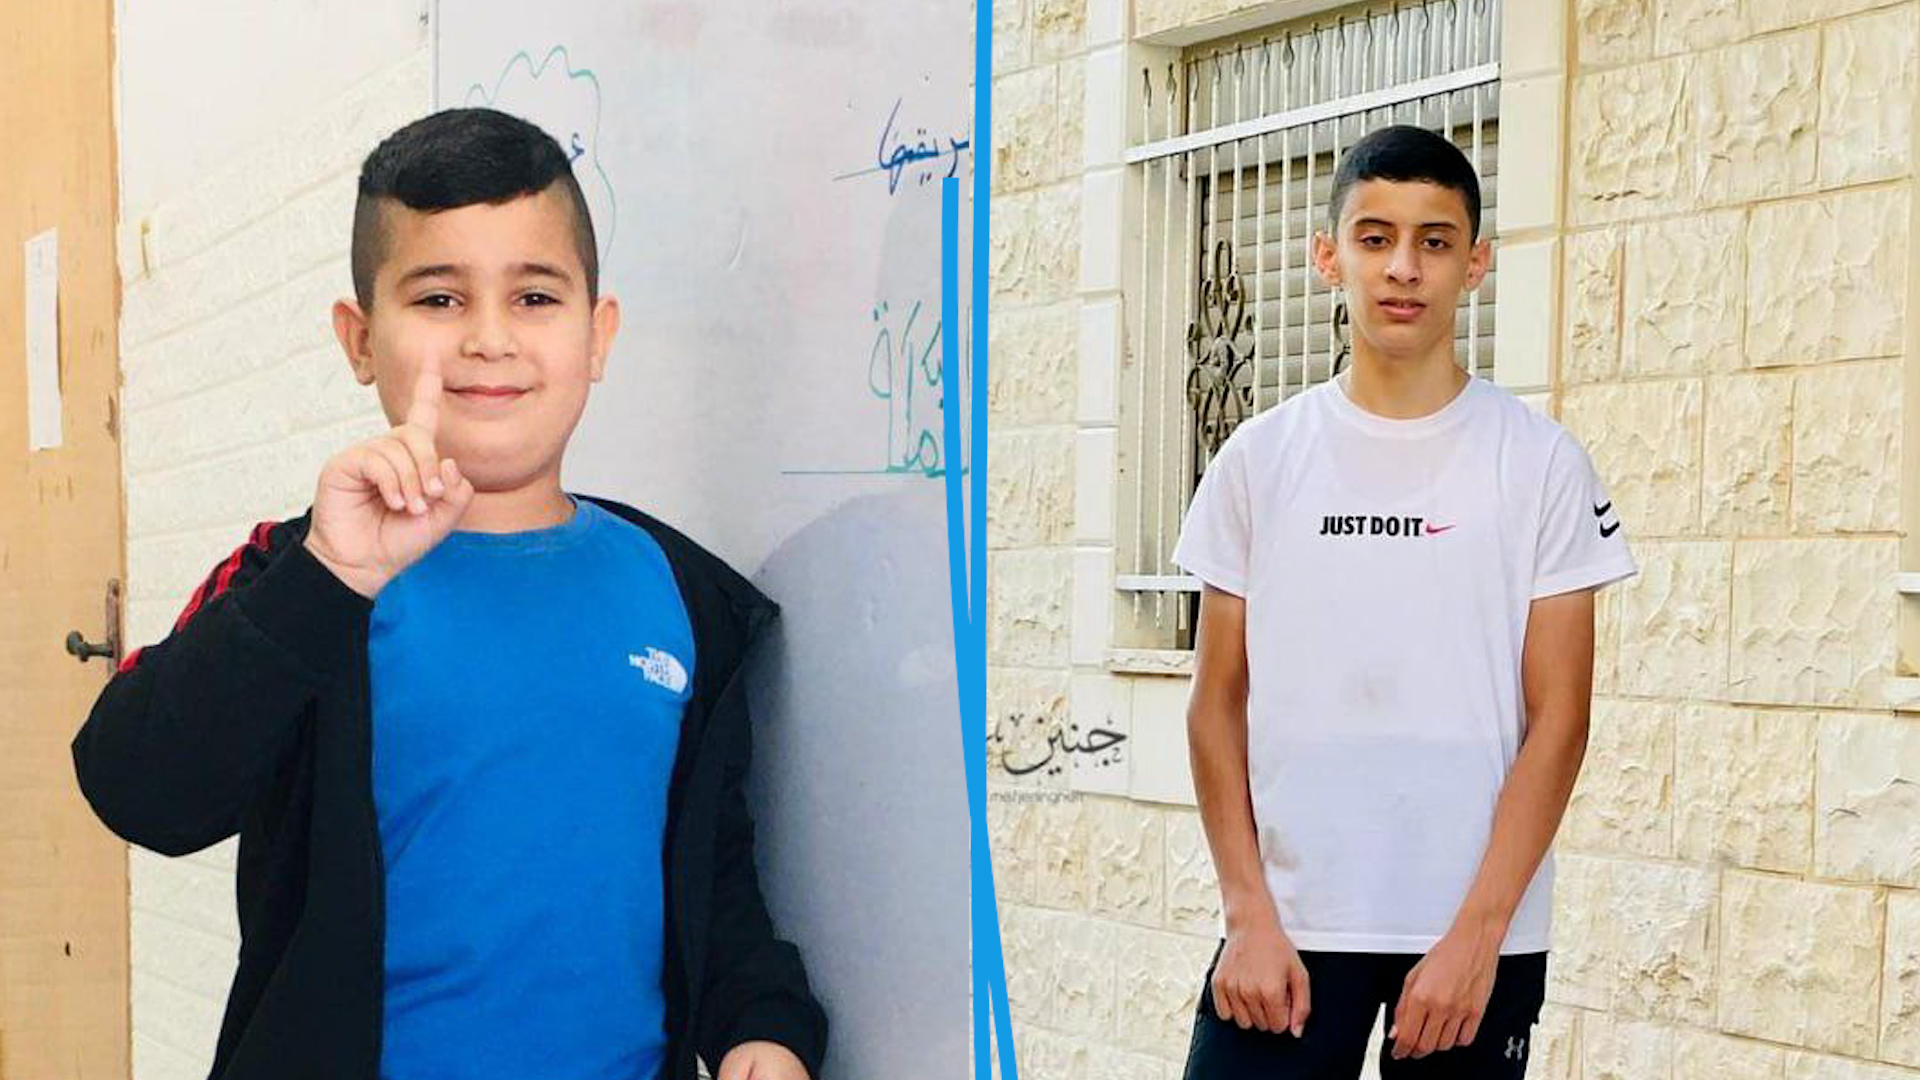 De gauche à droite : Adam Al-Ghoul, 9 ans. et Bassem al-Wafa, 15 ans.